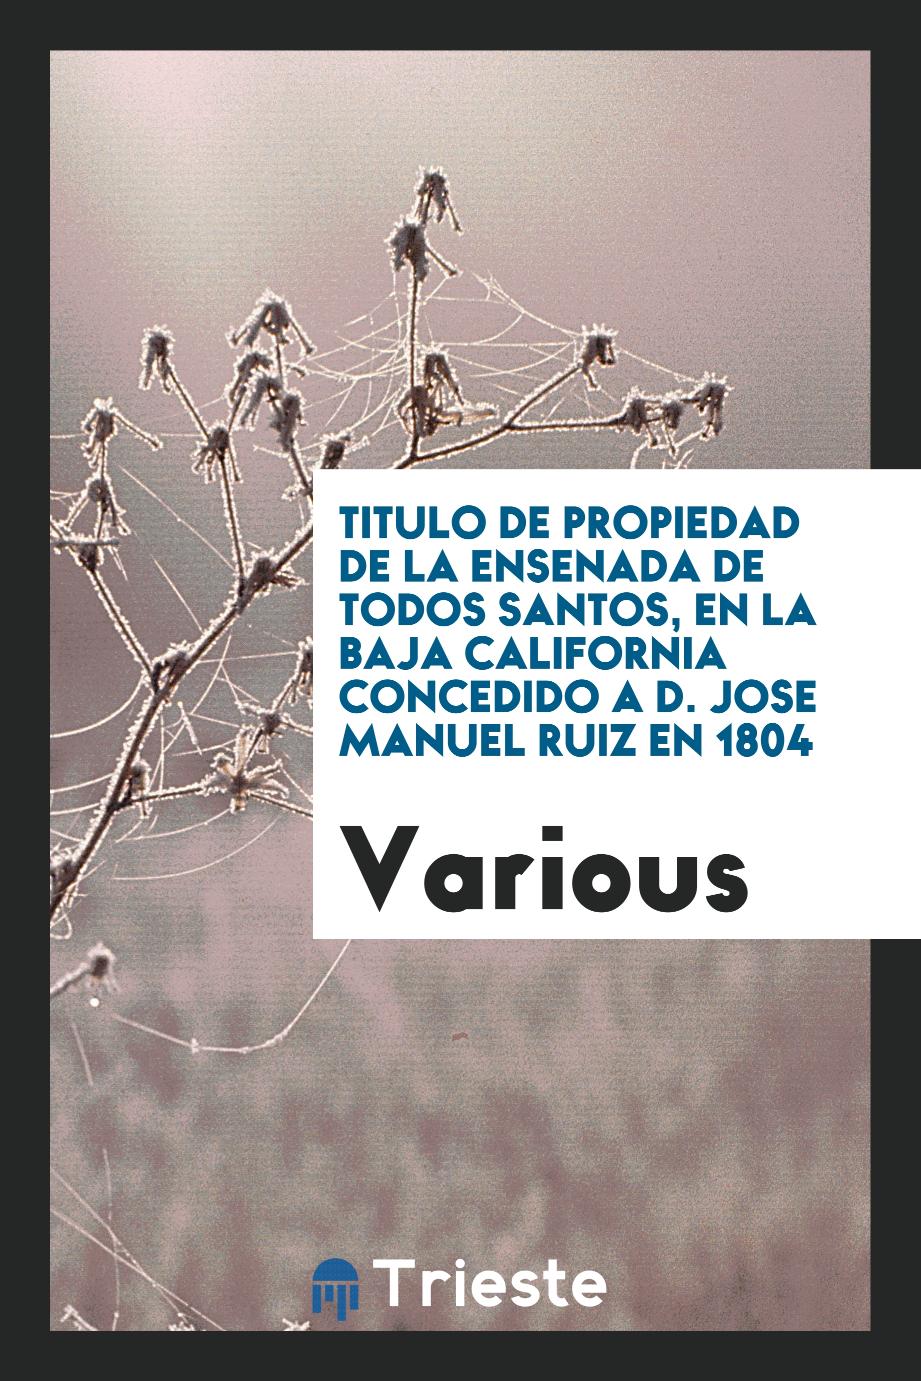 Titulo de Propiedad de la Ensenada de Todos Santos, en la Baja California concedido a D. Jose Manuel Ruiz en 1804